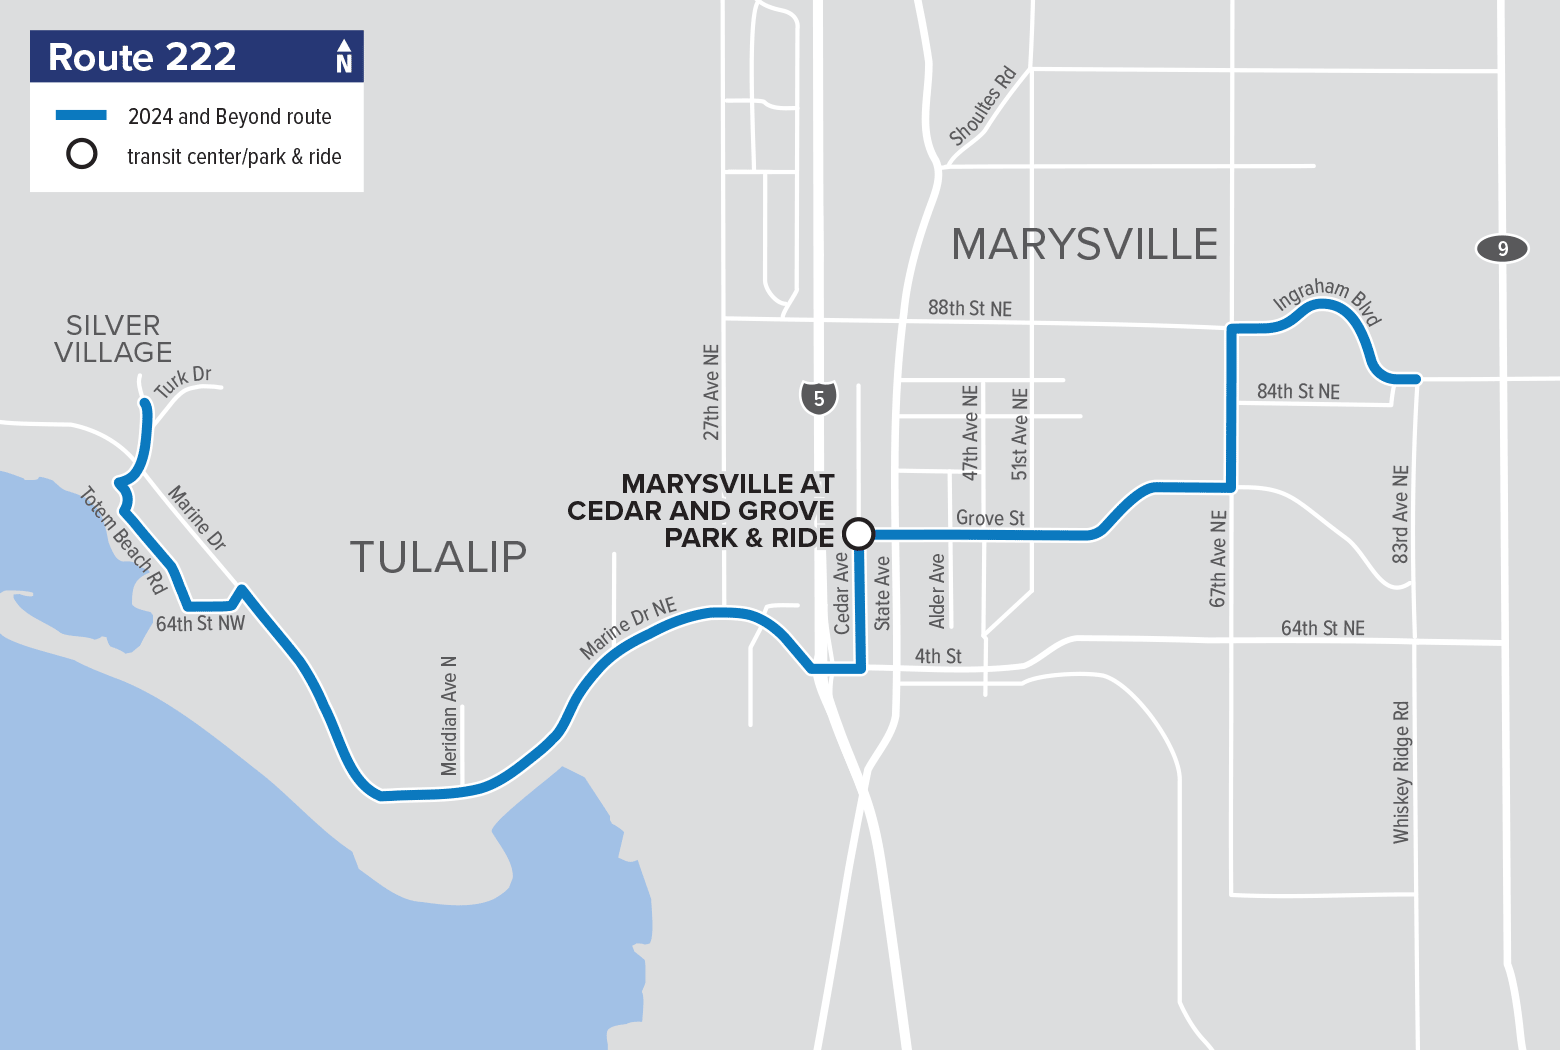 Route 222: Marysville – Tulalip